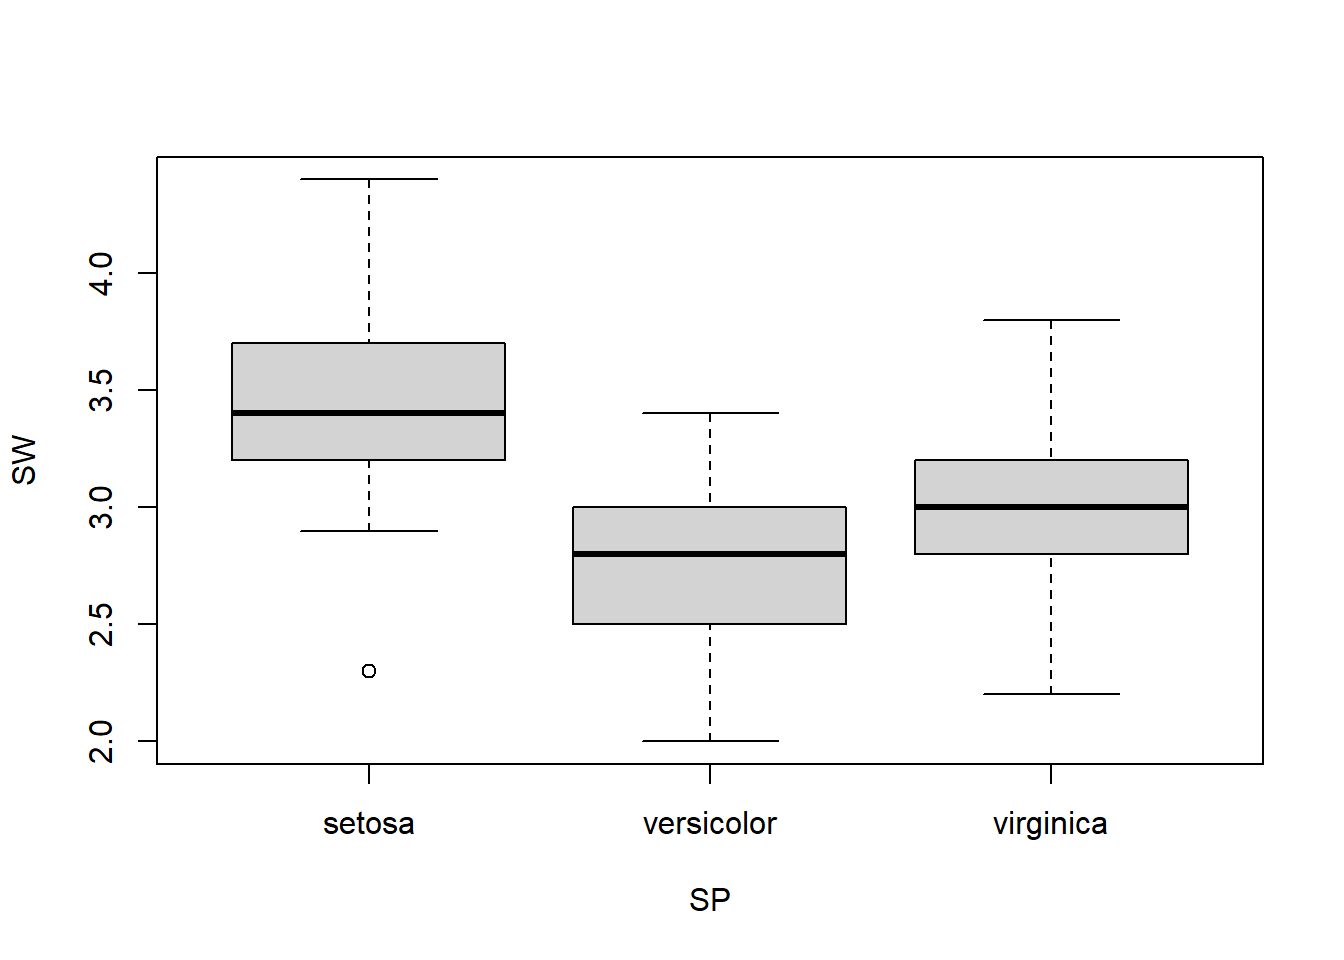 Boxplot of sepal width across 3 species.